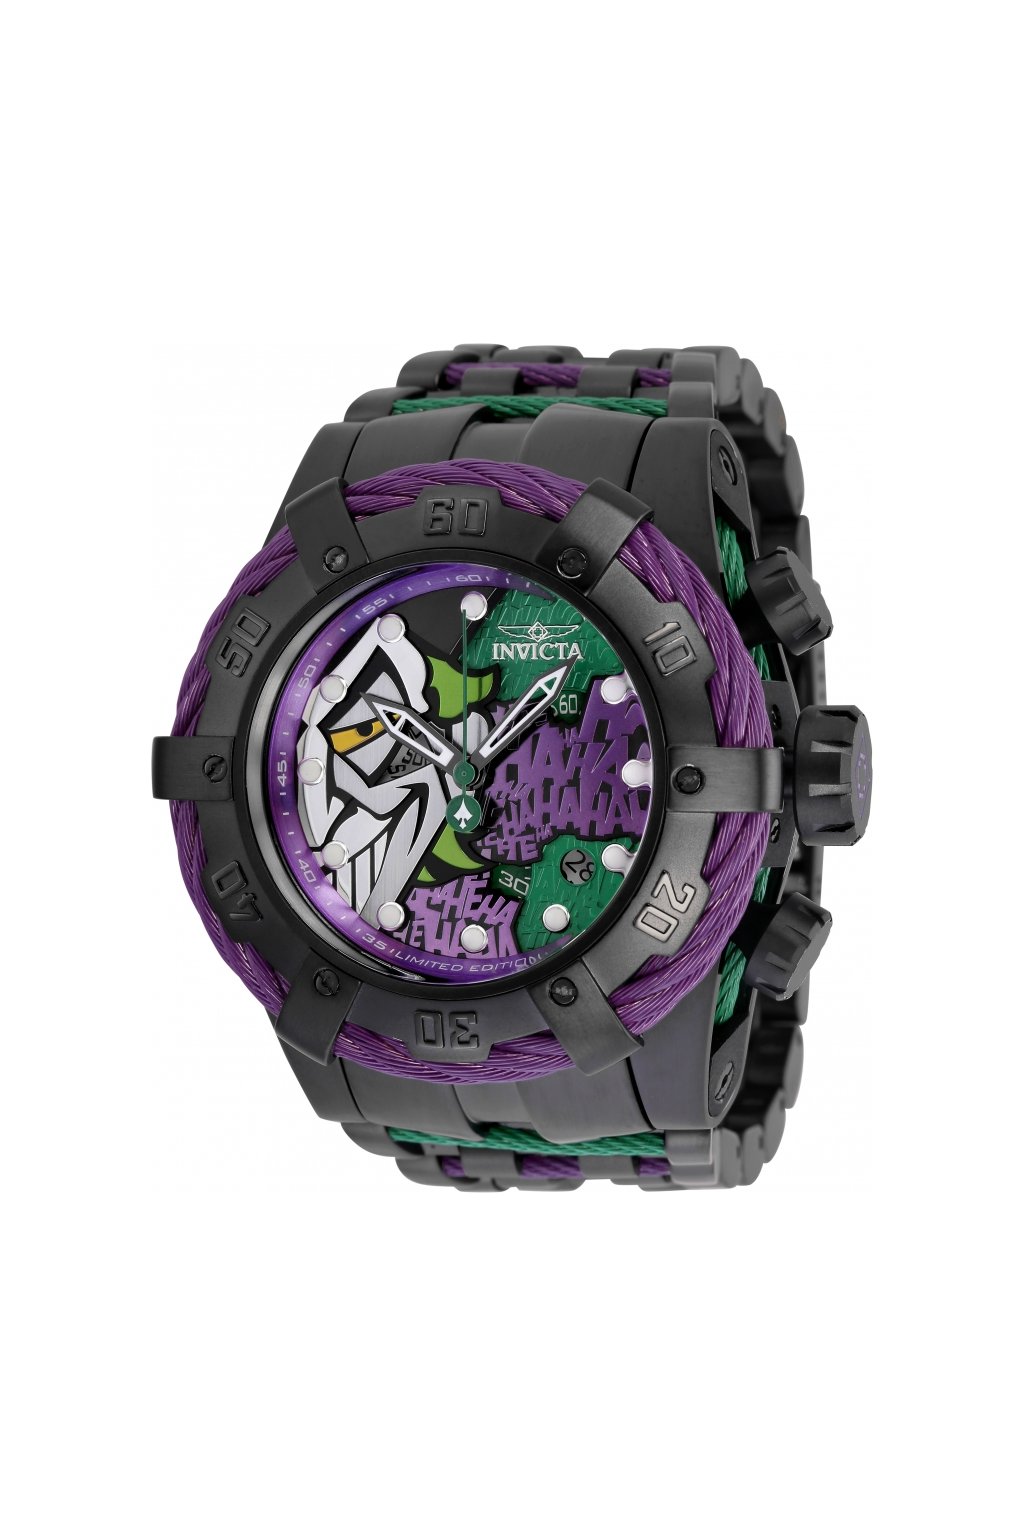 Pánské hodinky Invicta DC Comics Quartz 35321 Joker Limited Edition  + Kufr Invicta v hodnotě 1000 Kč ZDARMA